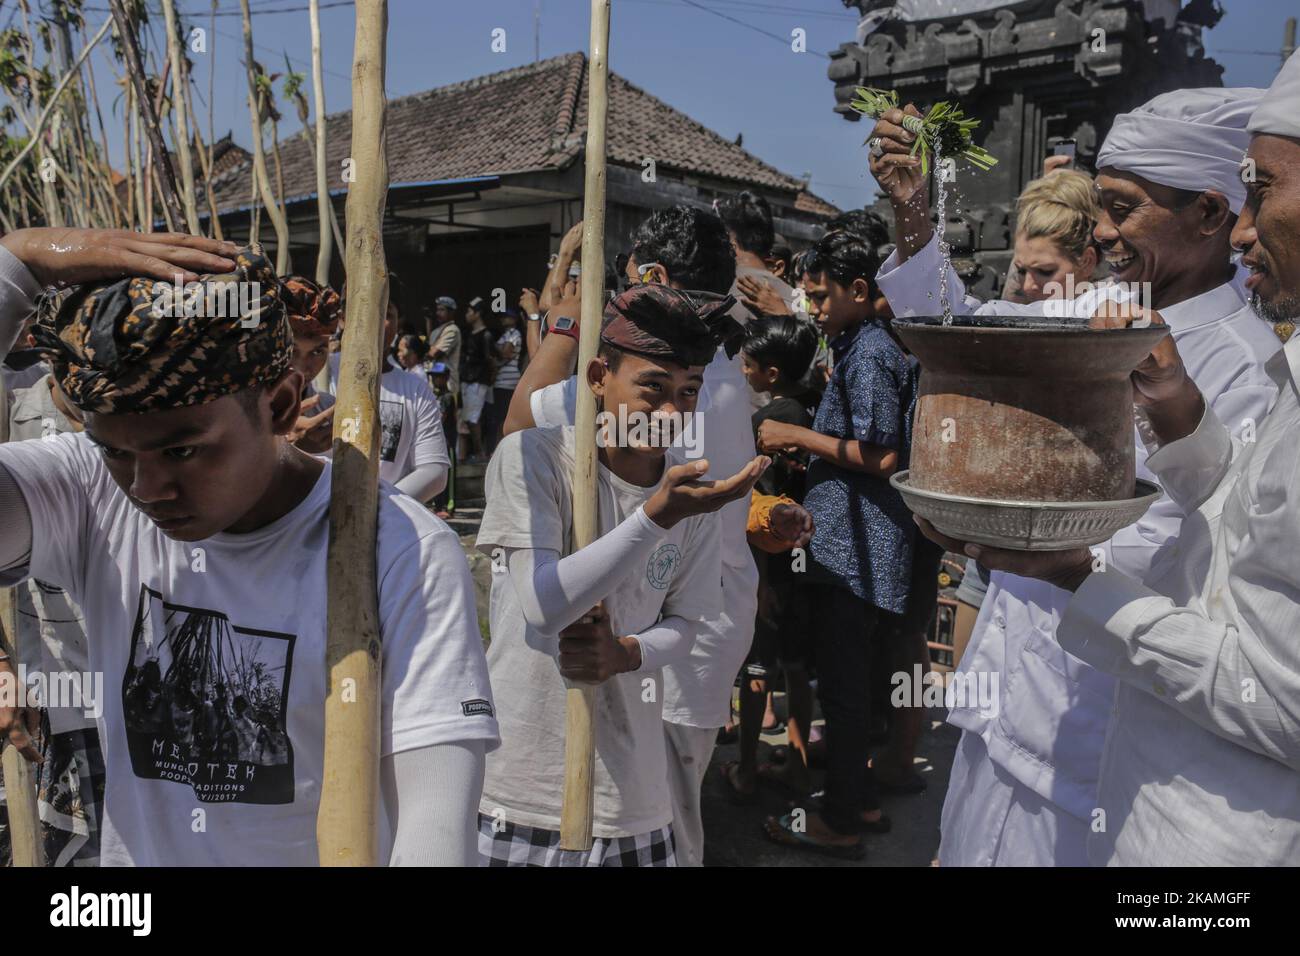 Priester, der jungen Dorfbewohnern Weihwasser gab, bevor das Mekotek-Ritual von balinesischen Hindus im Dorf Munggu am 15. April 2017 in Badung, Bali, Indonesien, praktiziert wurde. Das Mekotek-Ritual ist eine traditionelle Zeremonie im Dorf Munggu, bei der der symbolische Sieg des Guten (Dharma) gegen das Böse (Adharma) gefeiert wird, bei dem die Teilnehmer wiederholt auf eine hölzerne Pyramide aus Stäben klettern, wie sie von Zelebranten von einem Tempel zum anderen getragen wird. (Foto von Johanes Christo/NurPhoto) *** Bitte nutzen Sie die Gutschrift aus dem Kreditfeld *** Stockfoto